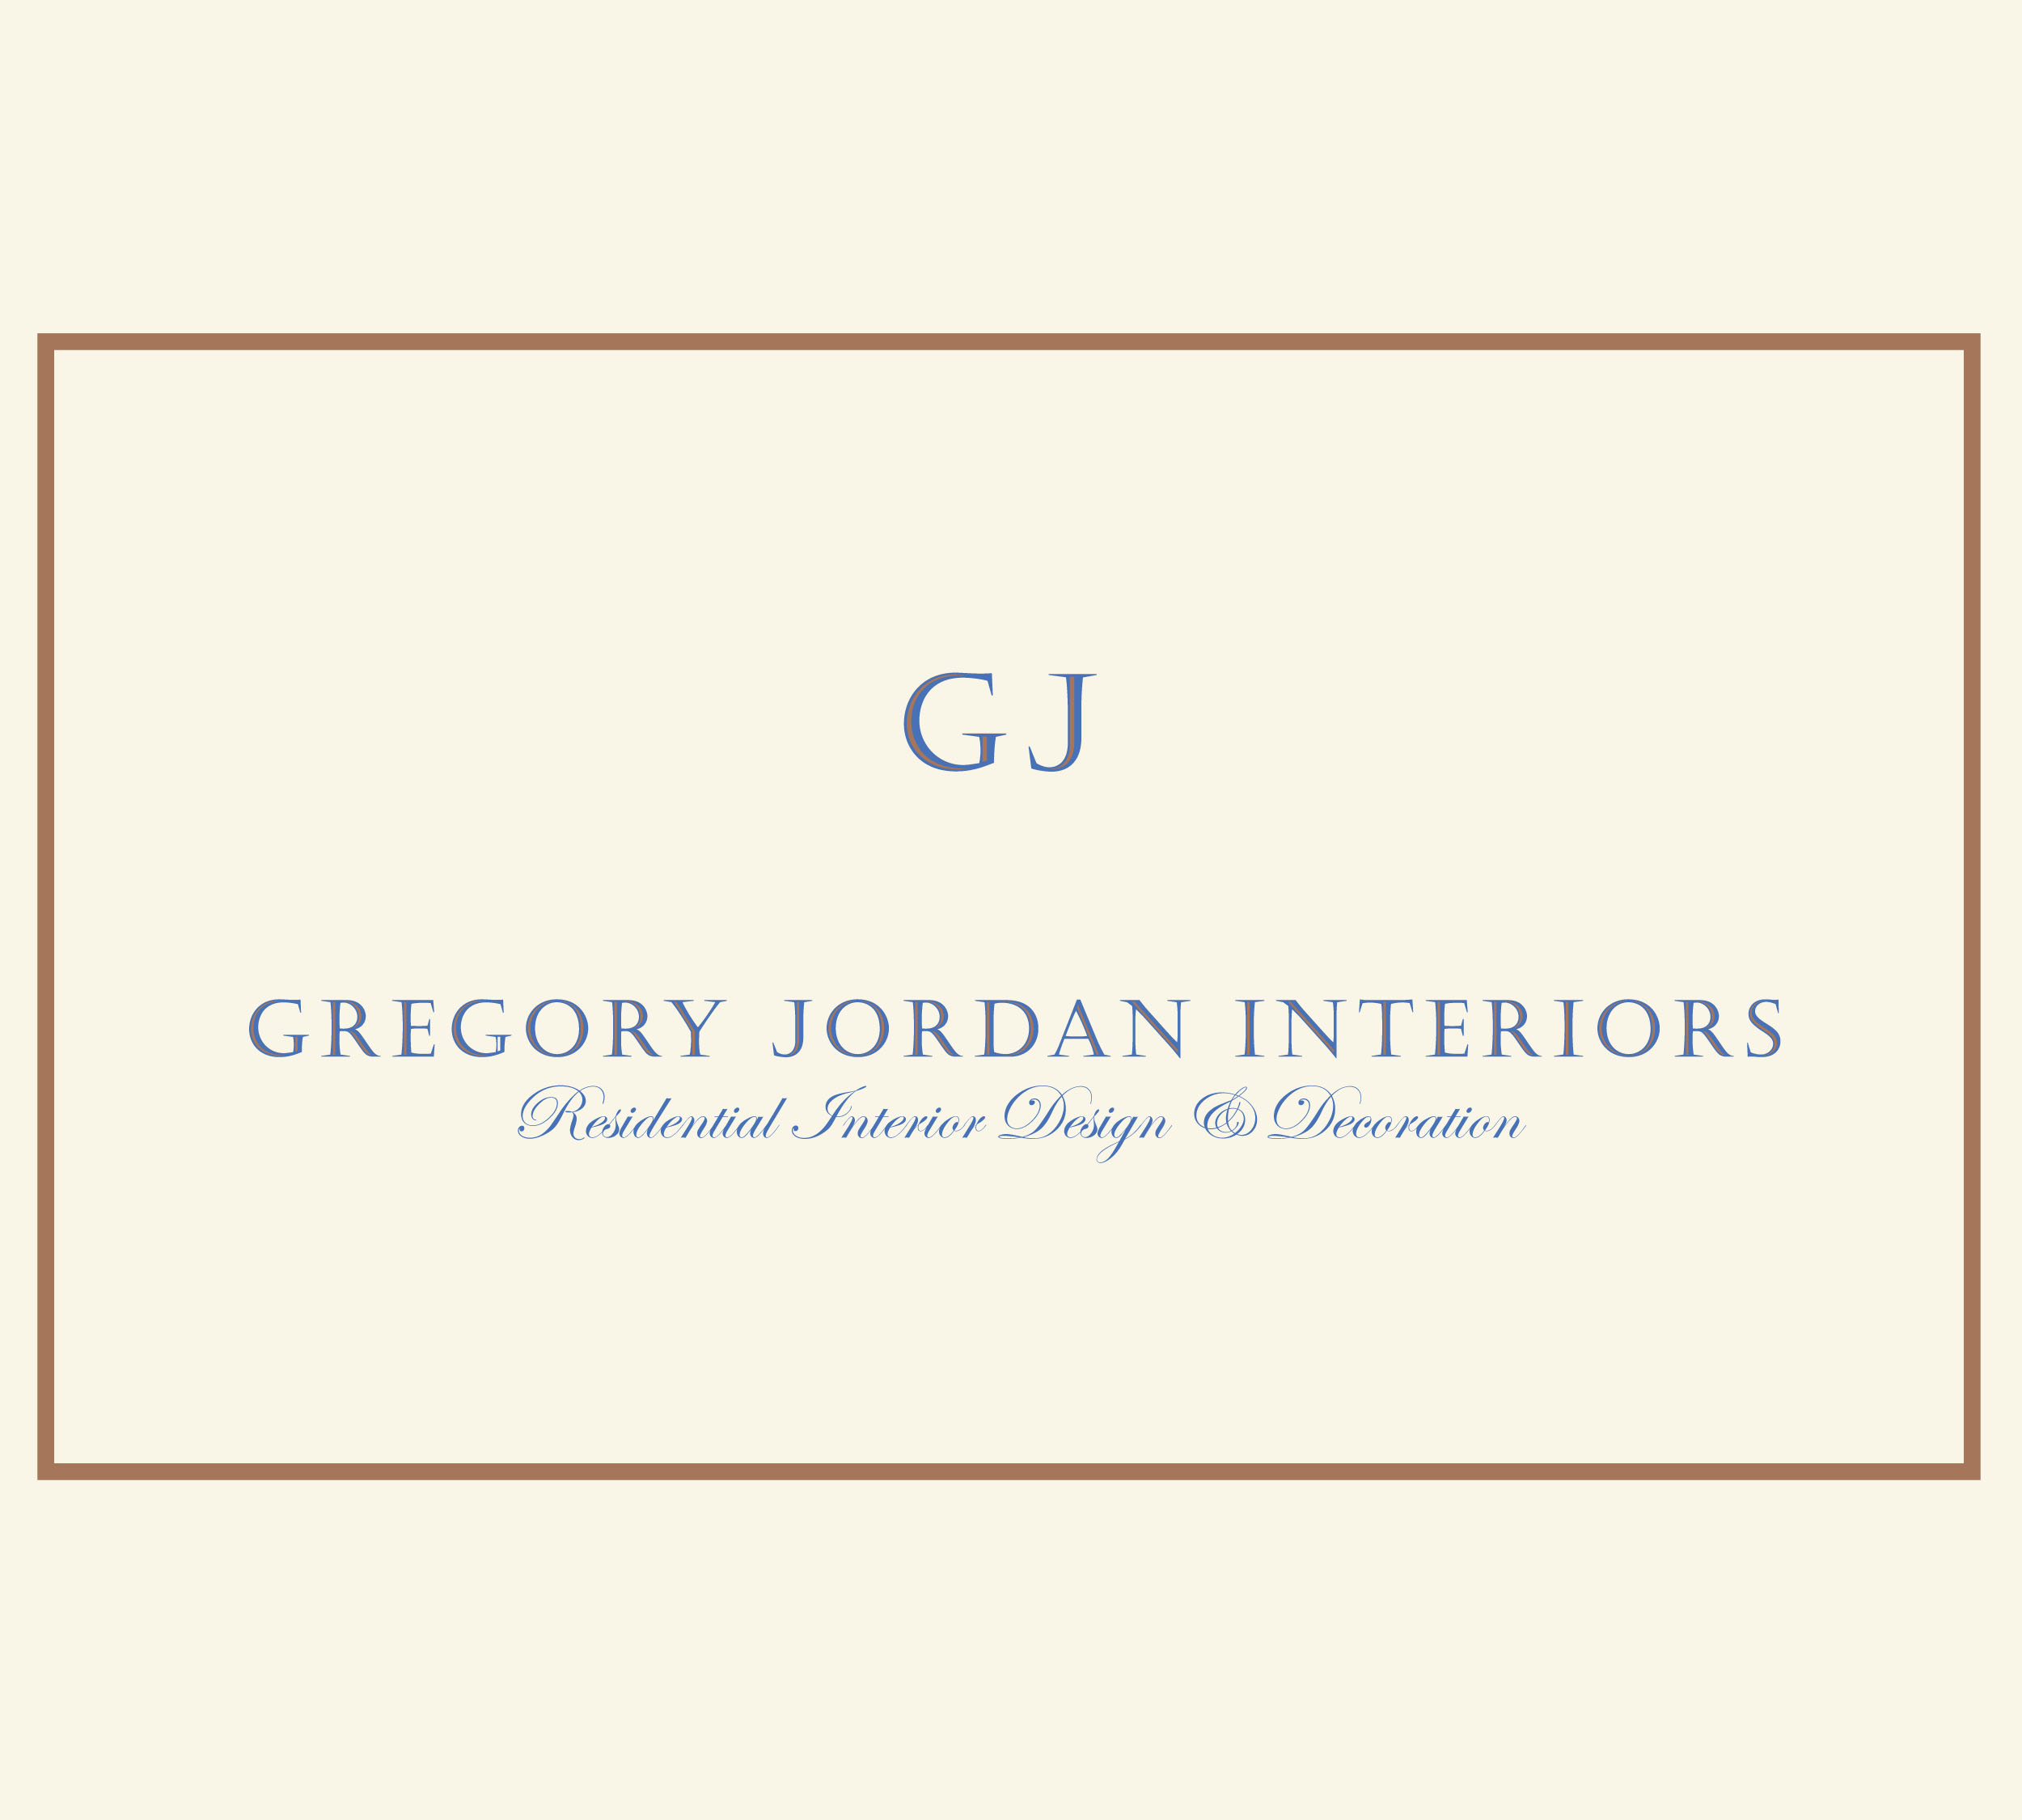 Gregory Jordan Interiors